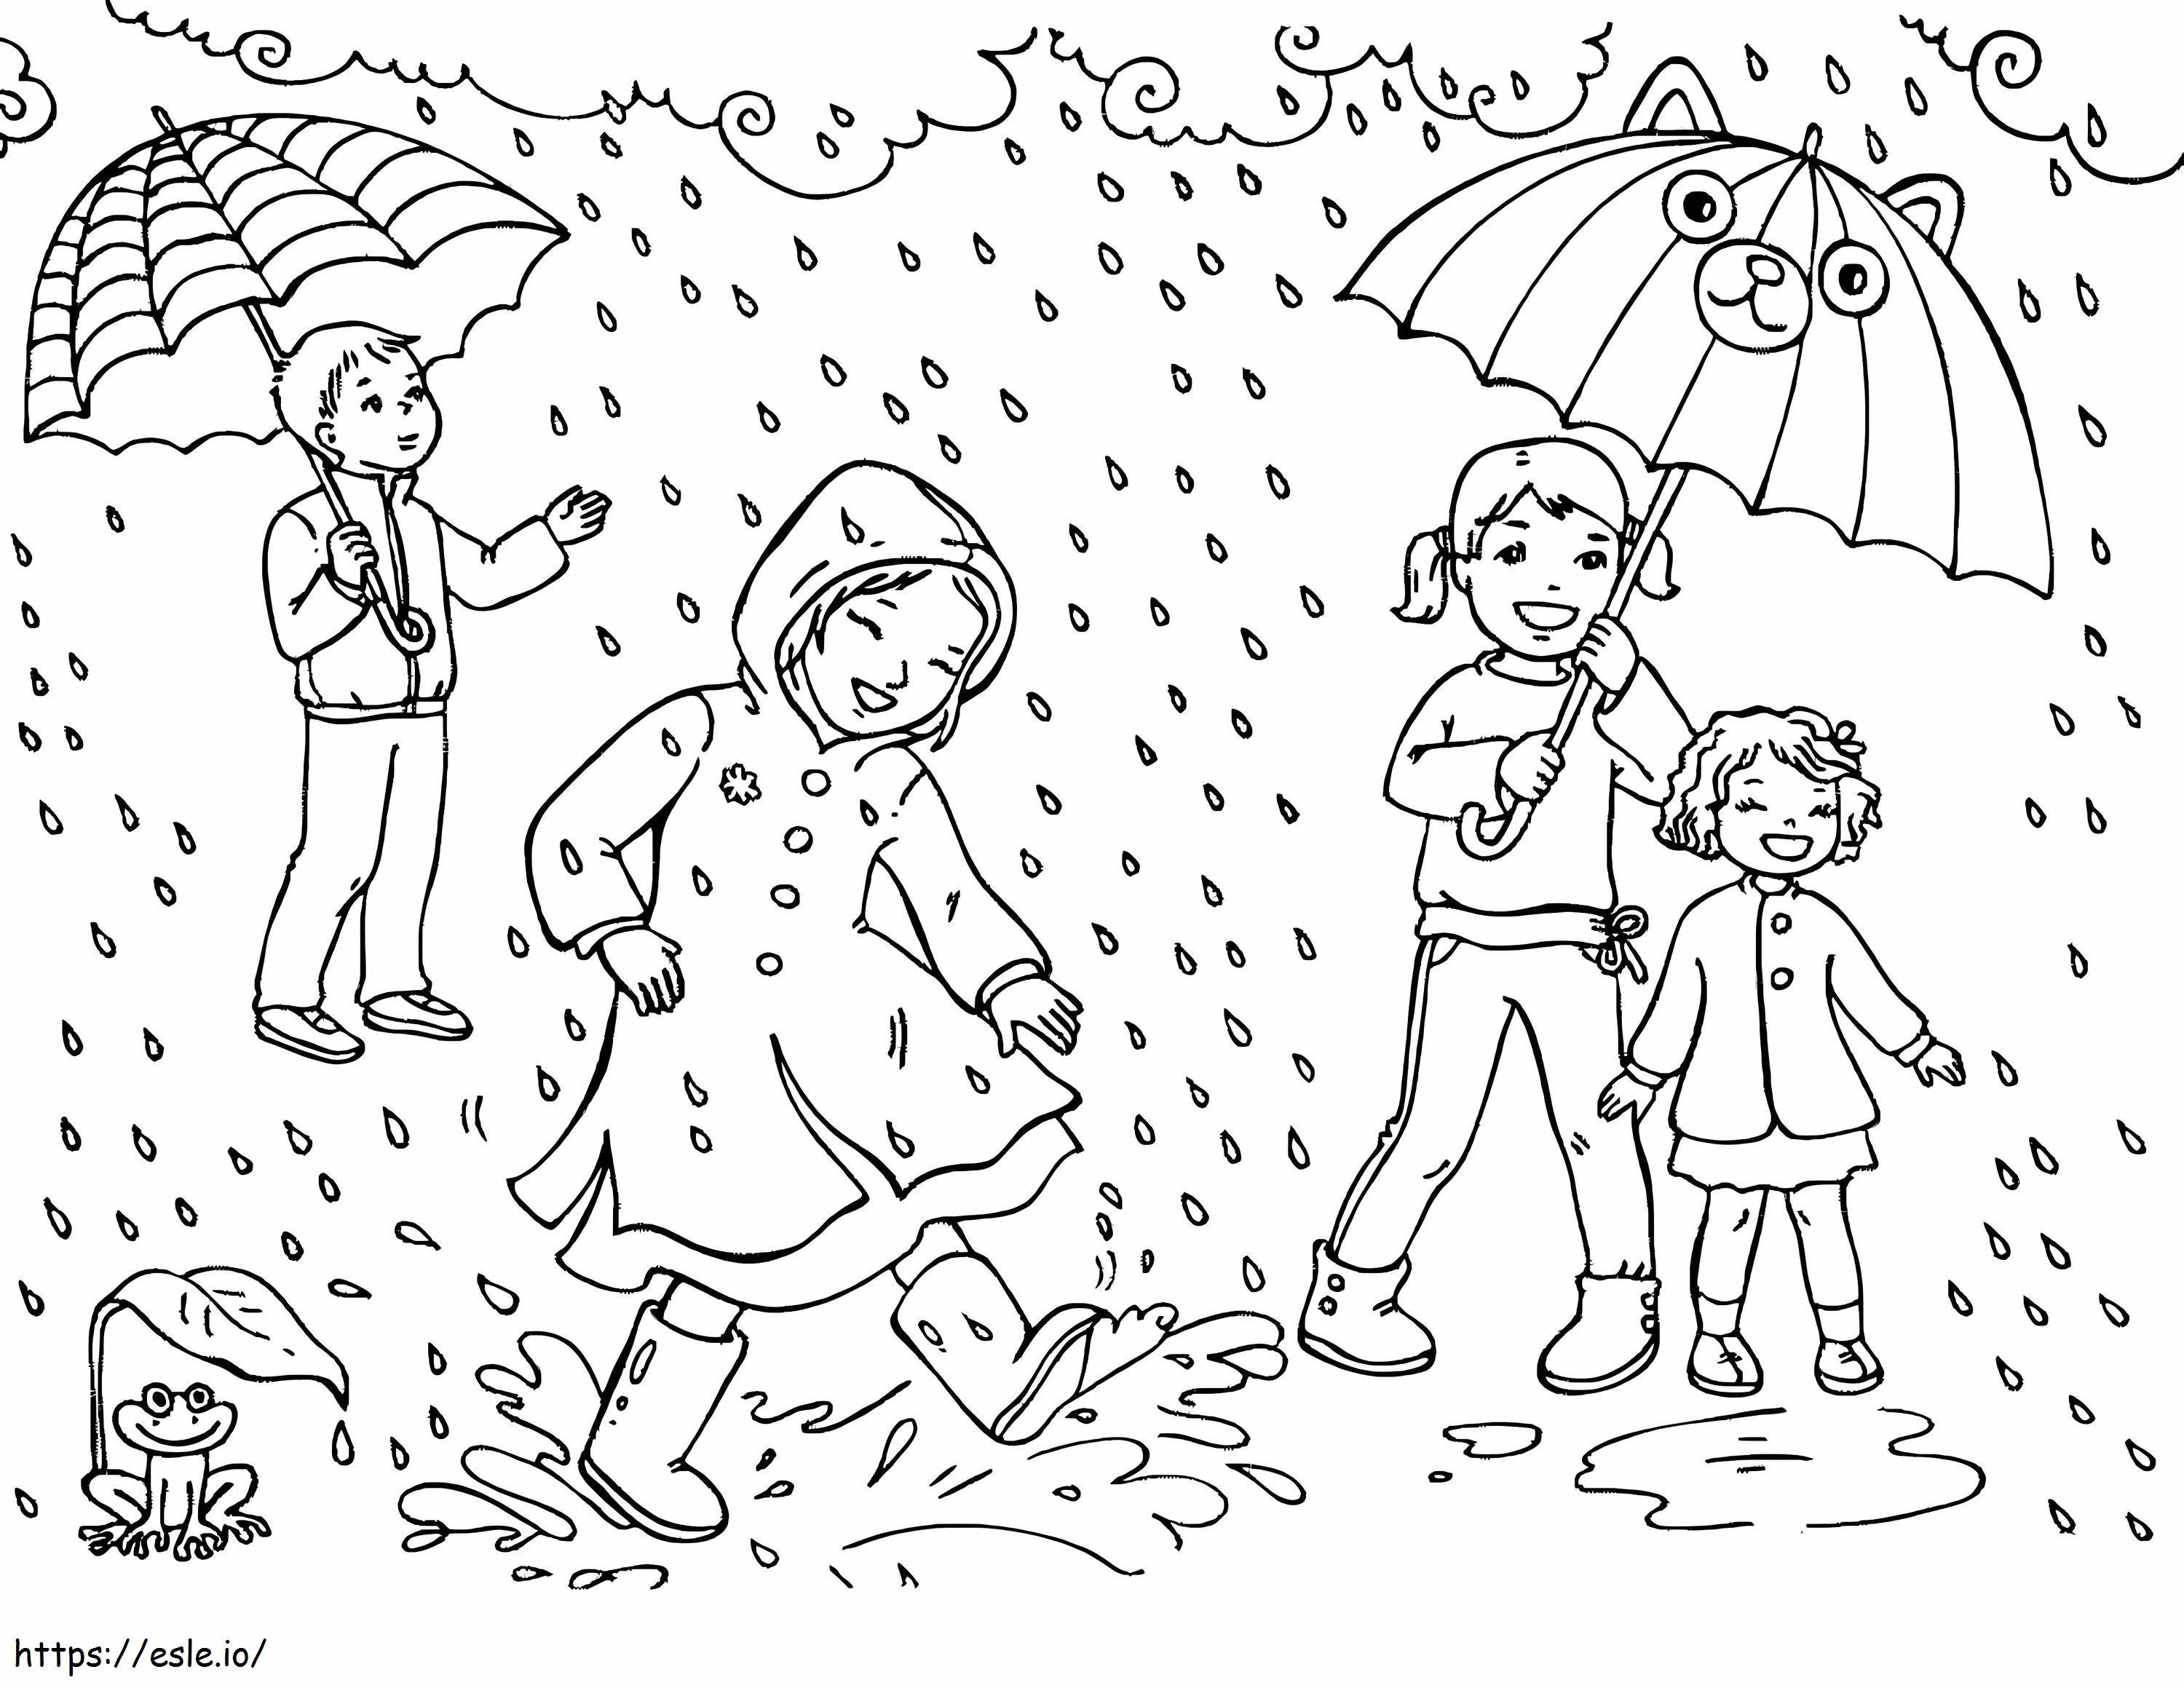 Fun Rain coloring page